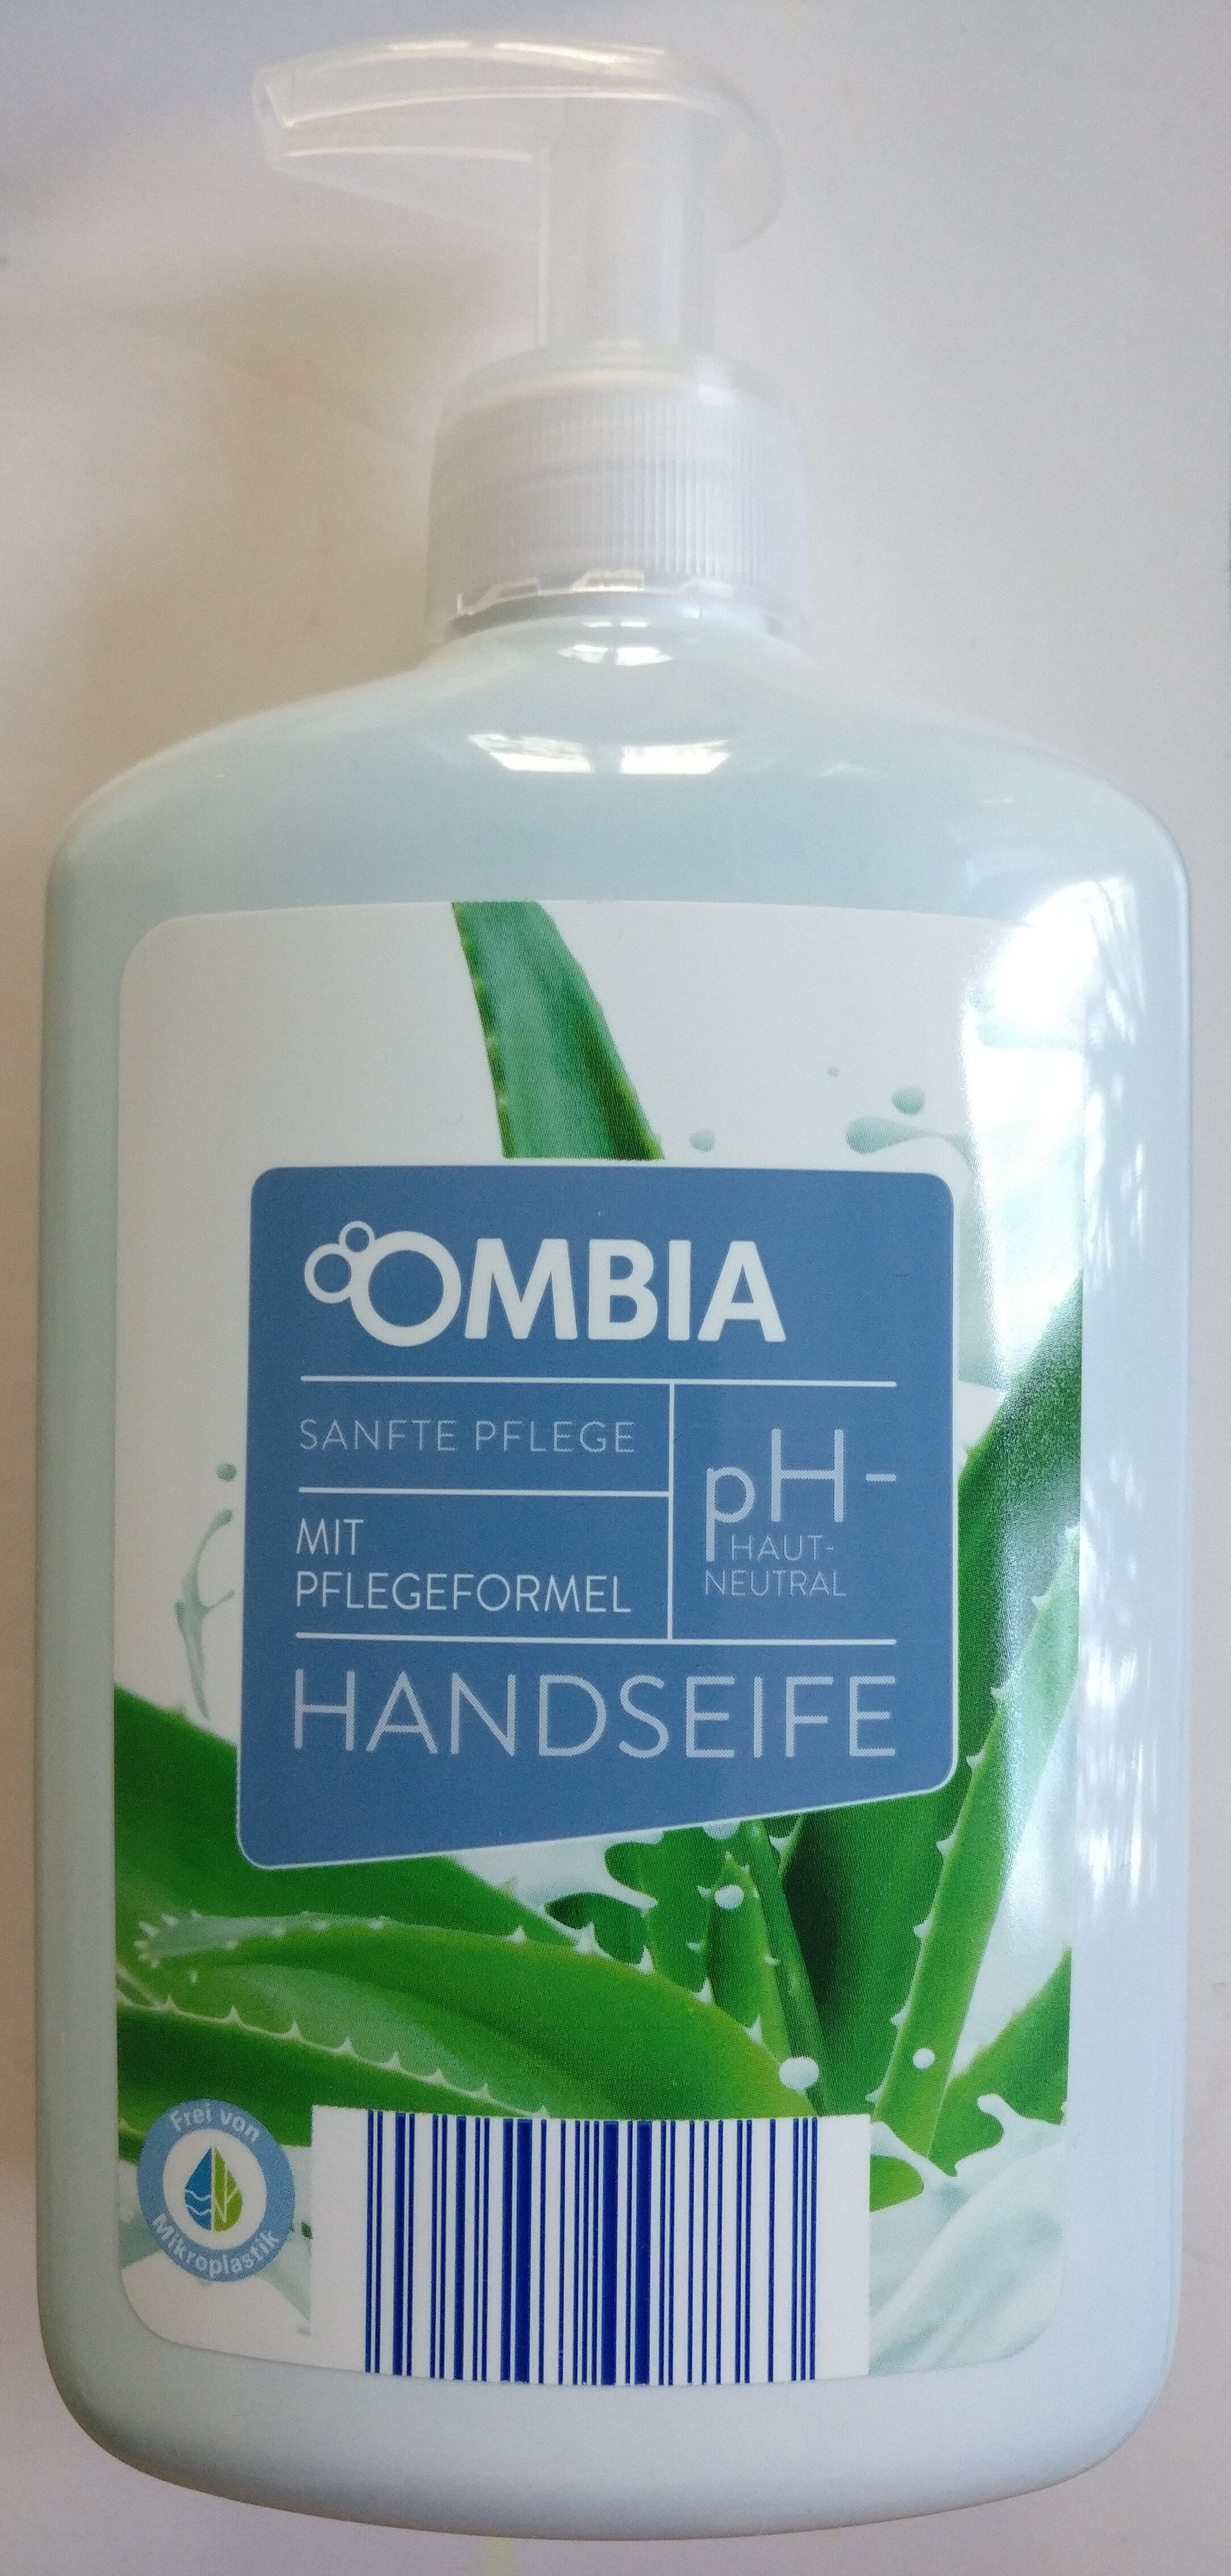 Sanfte Pflege Handseife - Produkt - de